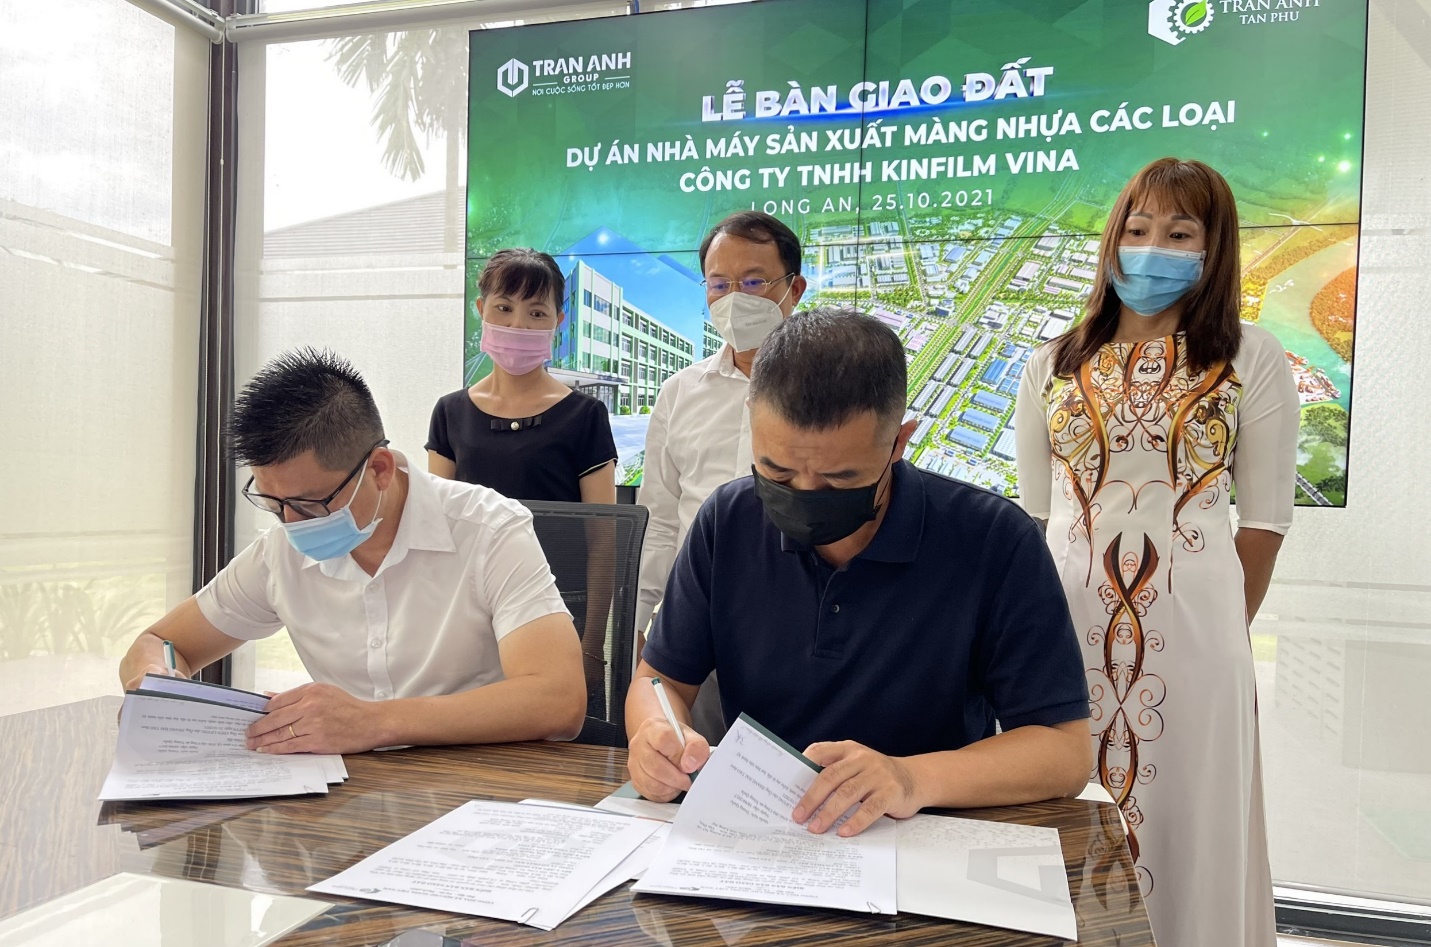 Đại diện Trần Anh Group thực hiện ký kết bàn giao đất cho Công ty TNHH Kinfilm Vina